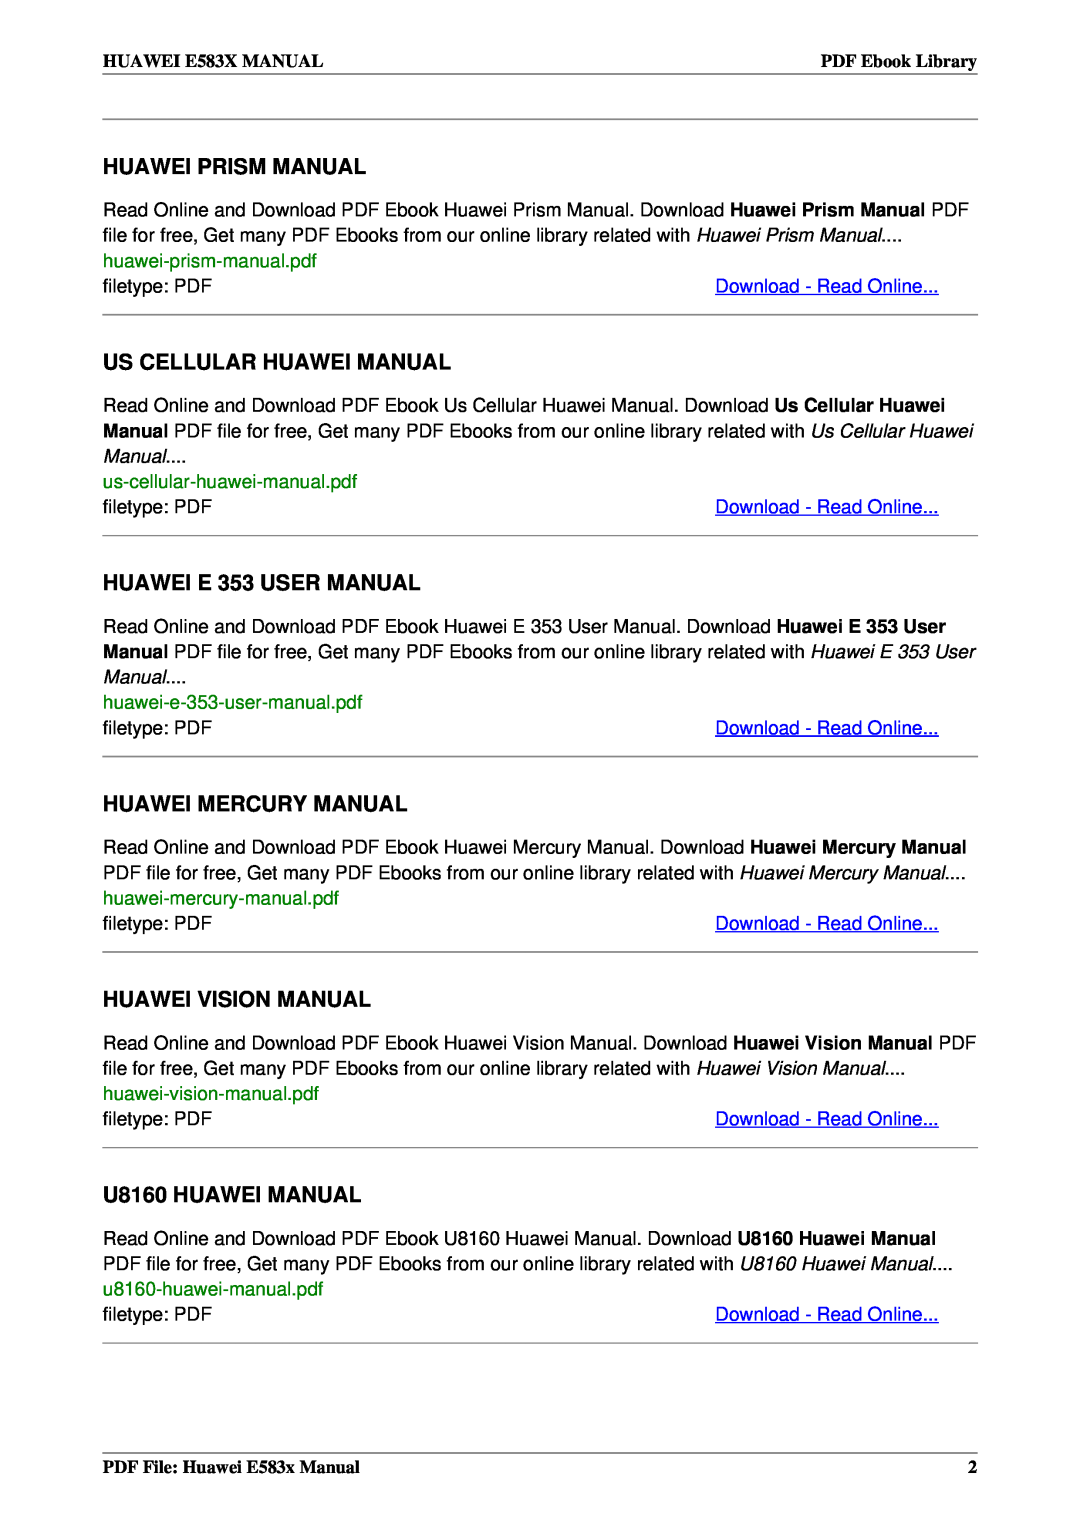 Huawei E583x Huawei Prism Manual, Us Cellular Huawei Manual, Huawei Mercury Manual, Huawei Vision Manual, filetype PDF 